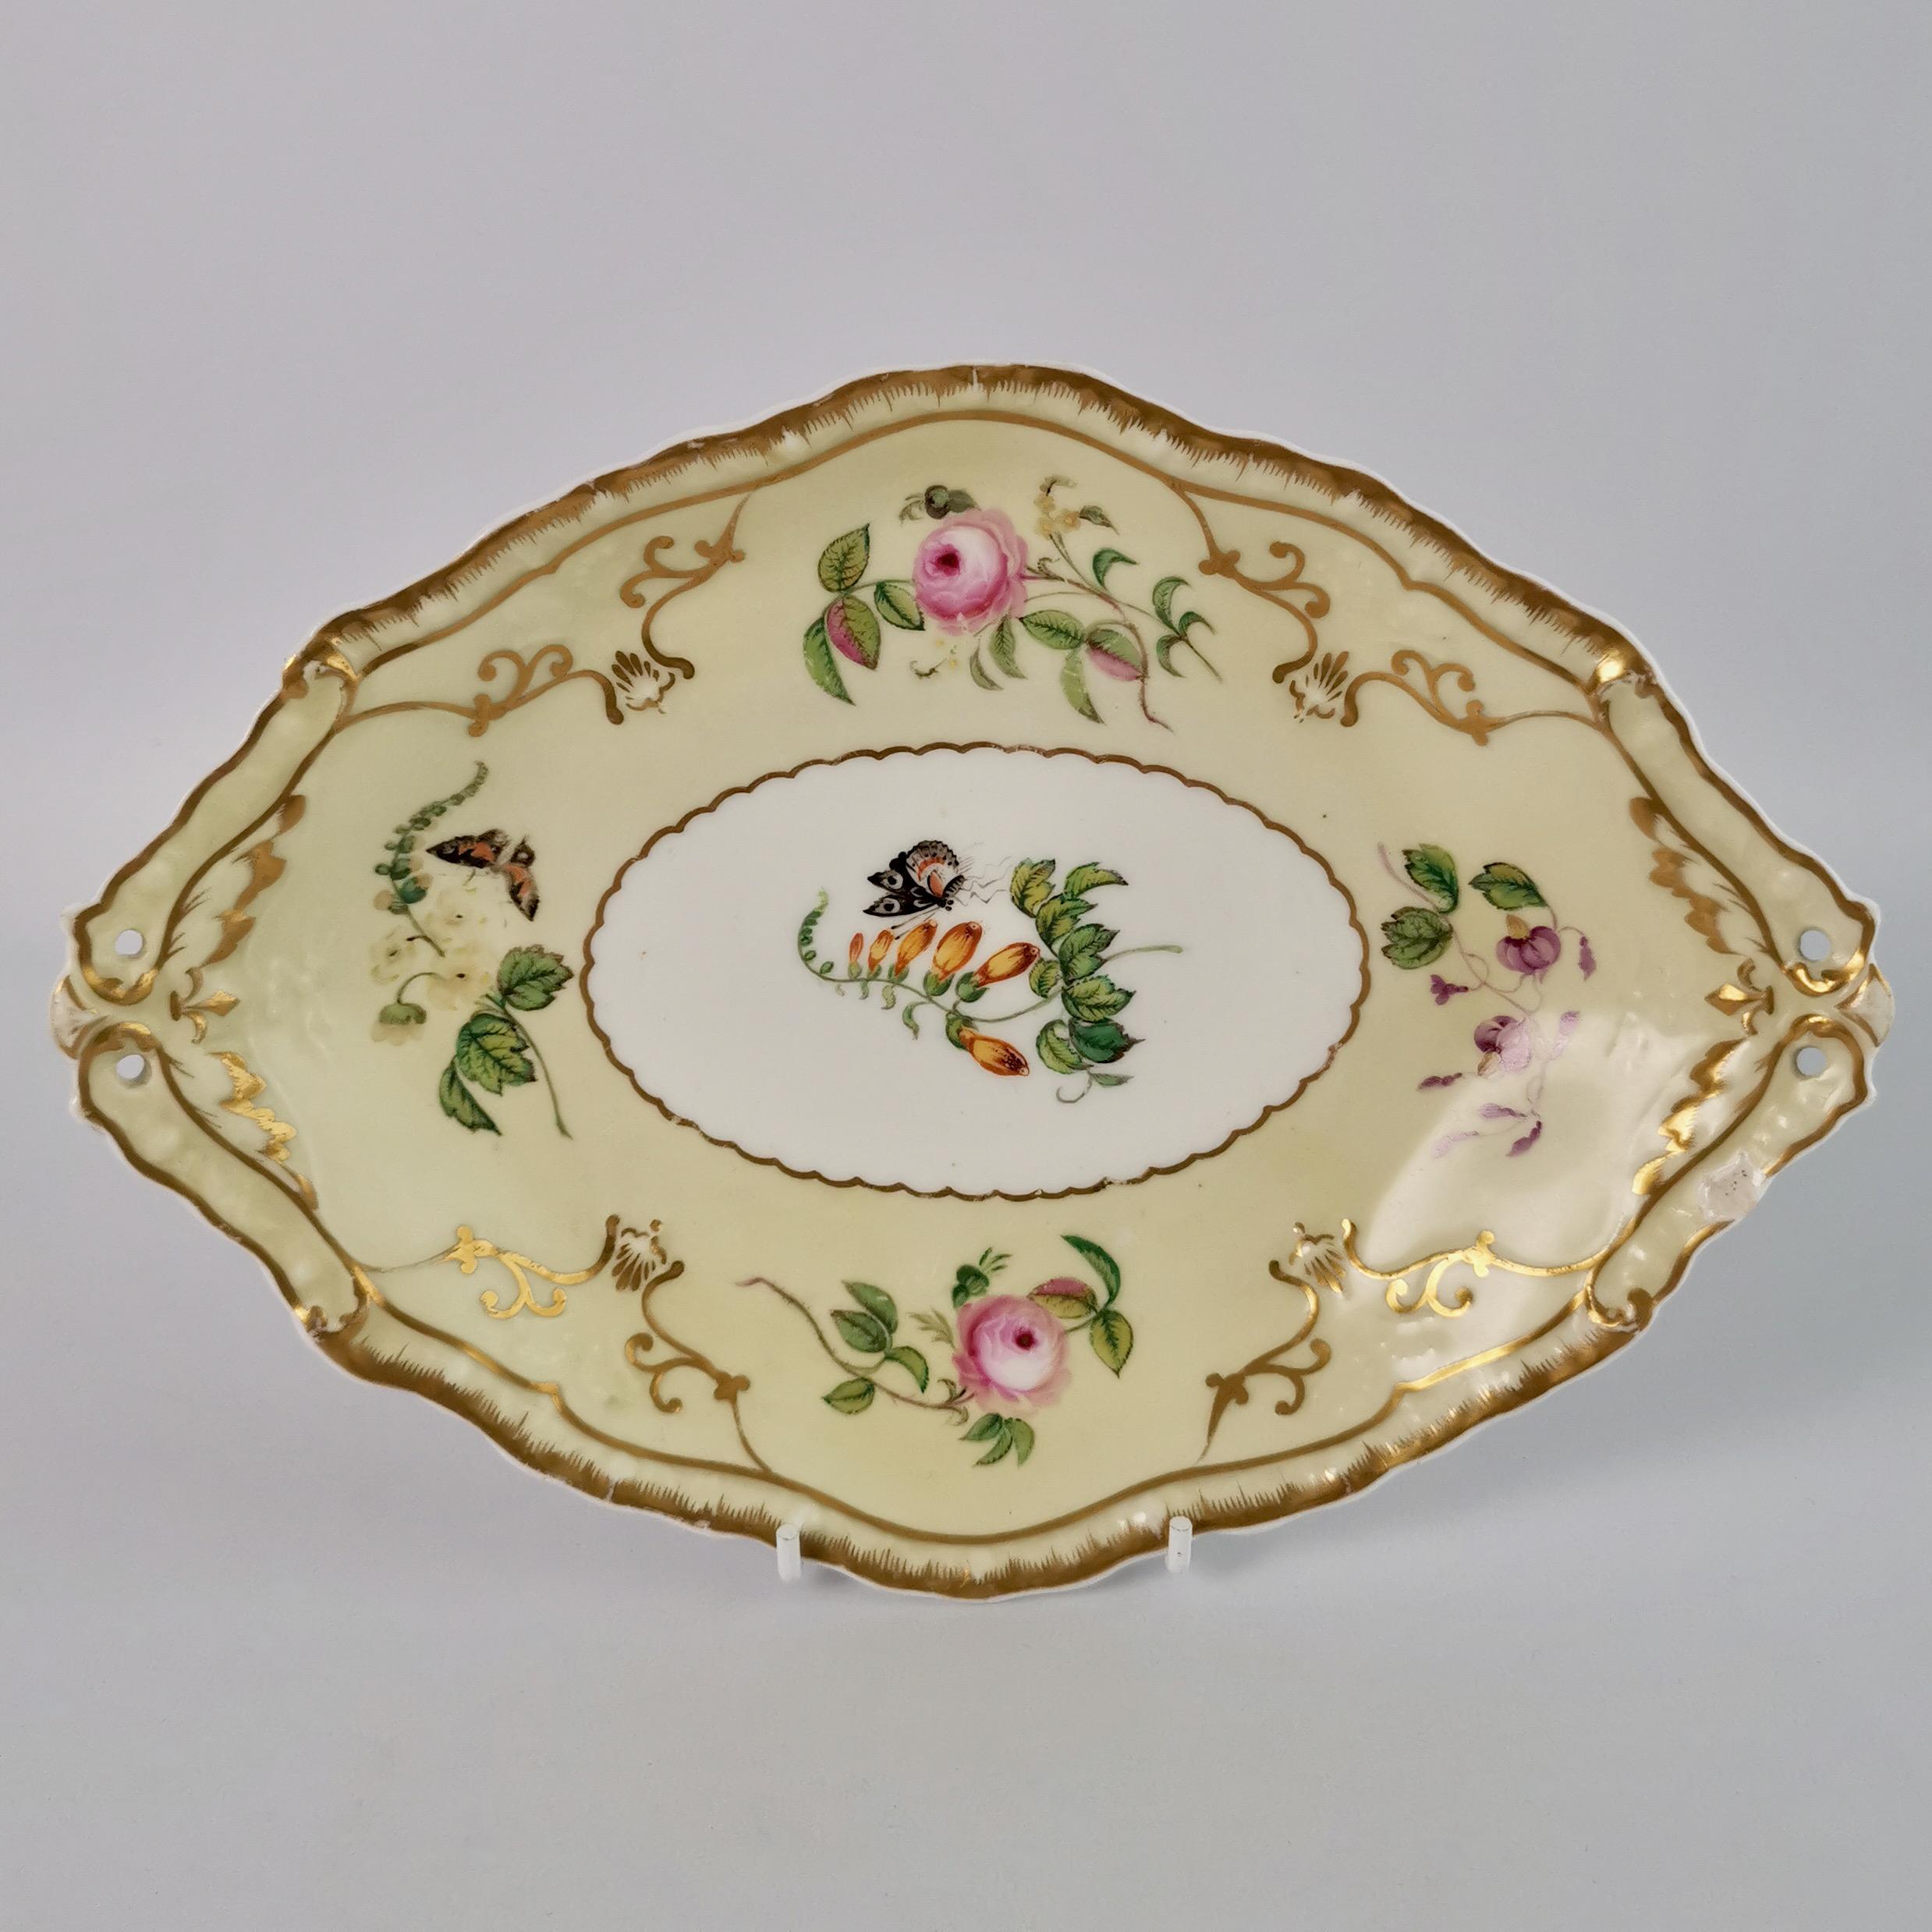 English Copeland & Garrett Porcelain Dessert Set, Yellow with Butterflies, 1833-1847